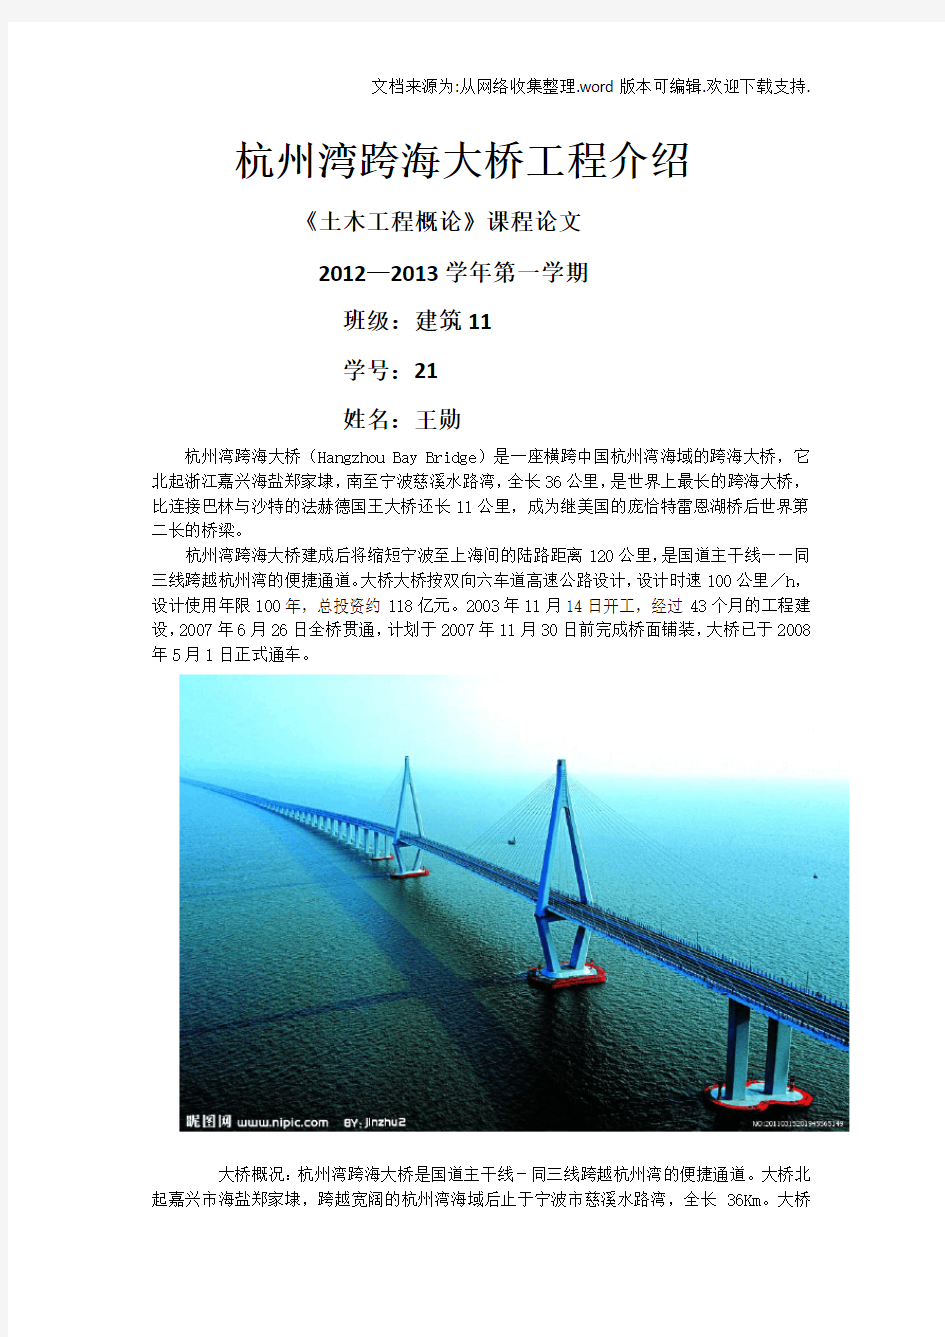 土木工程概论杭州湾跨海大桥工程介绍论文